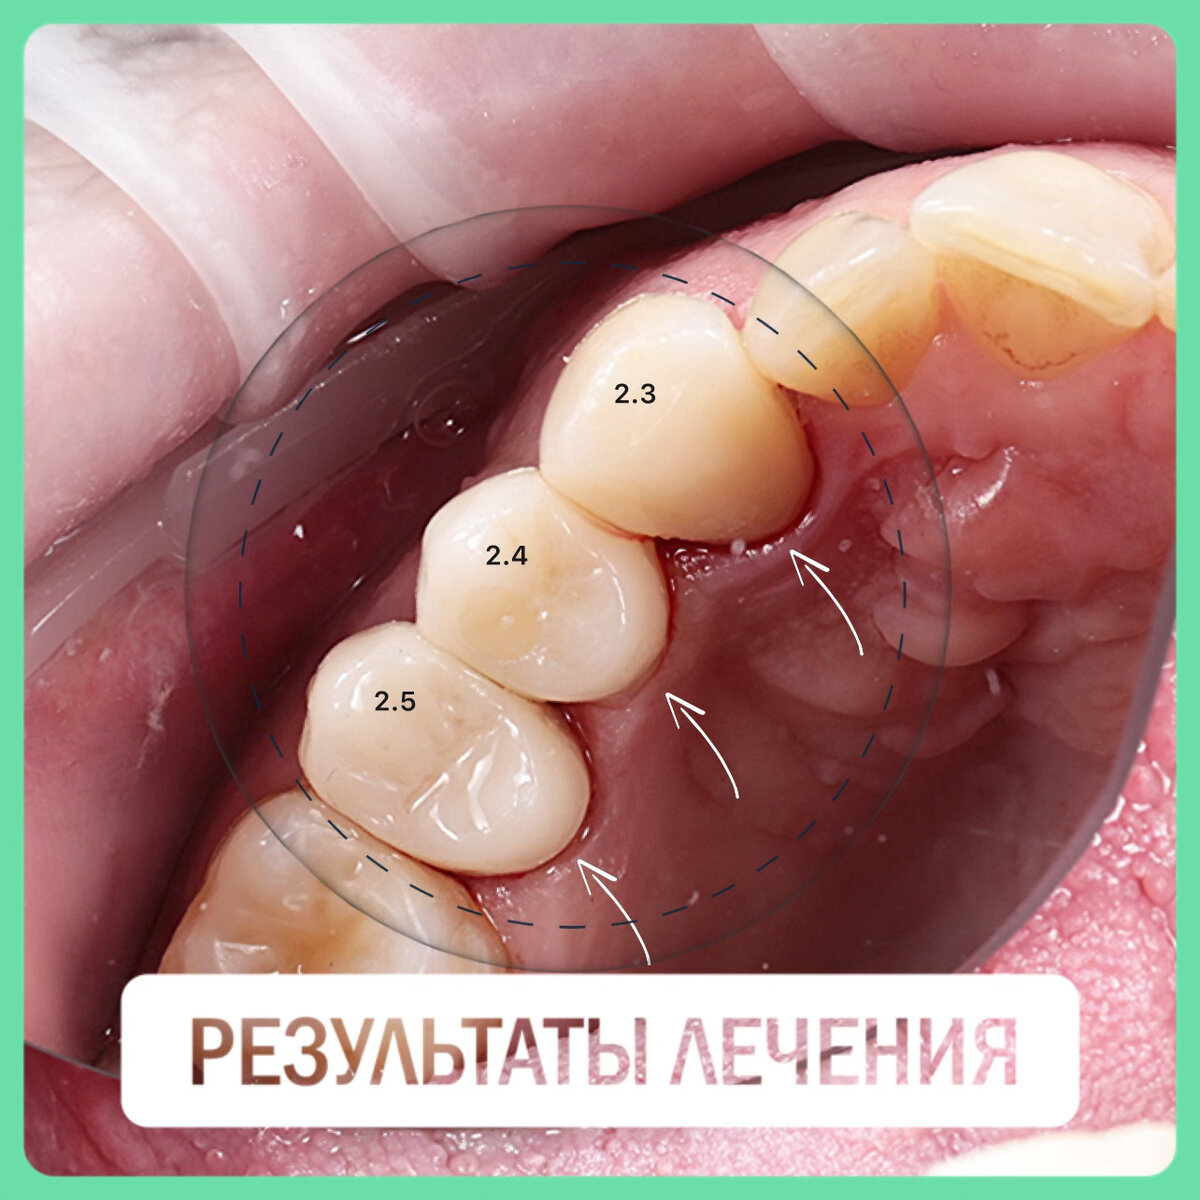 Изначальная клиническая ситуация у пациента мужчины в возрасте 40 лет:
Мостовидная конструкция из металлокерамики с опорой на свои зубы (23, 24 (отсутствует), 25).